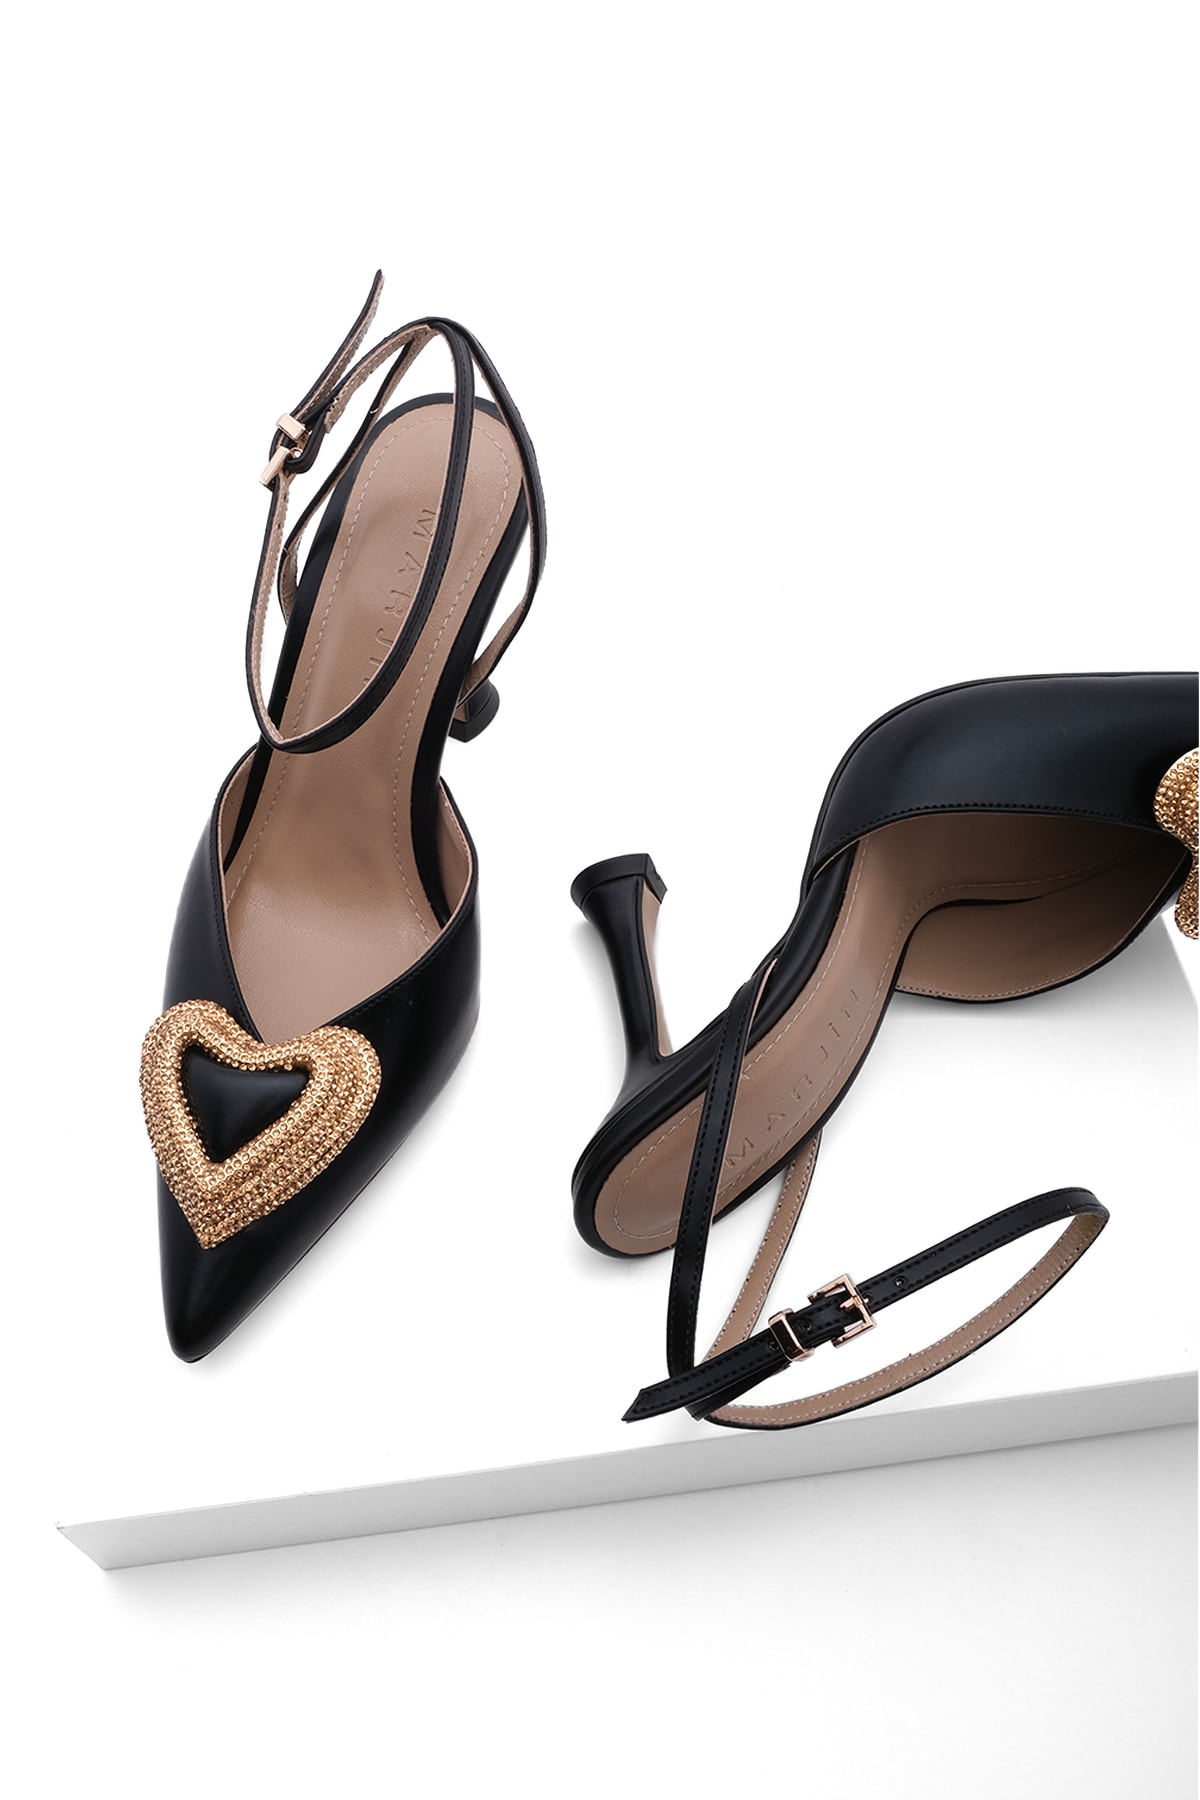 Marjin Kadın Stiletto Kalp Tokalı Gold Detaylı Topuklu Ayakkabı Arkası Açık Abiye Ayakkabı Tena siyah